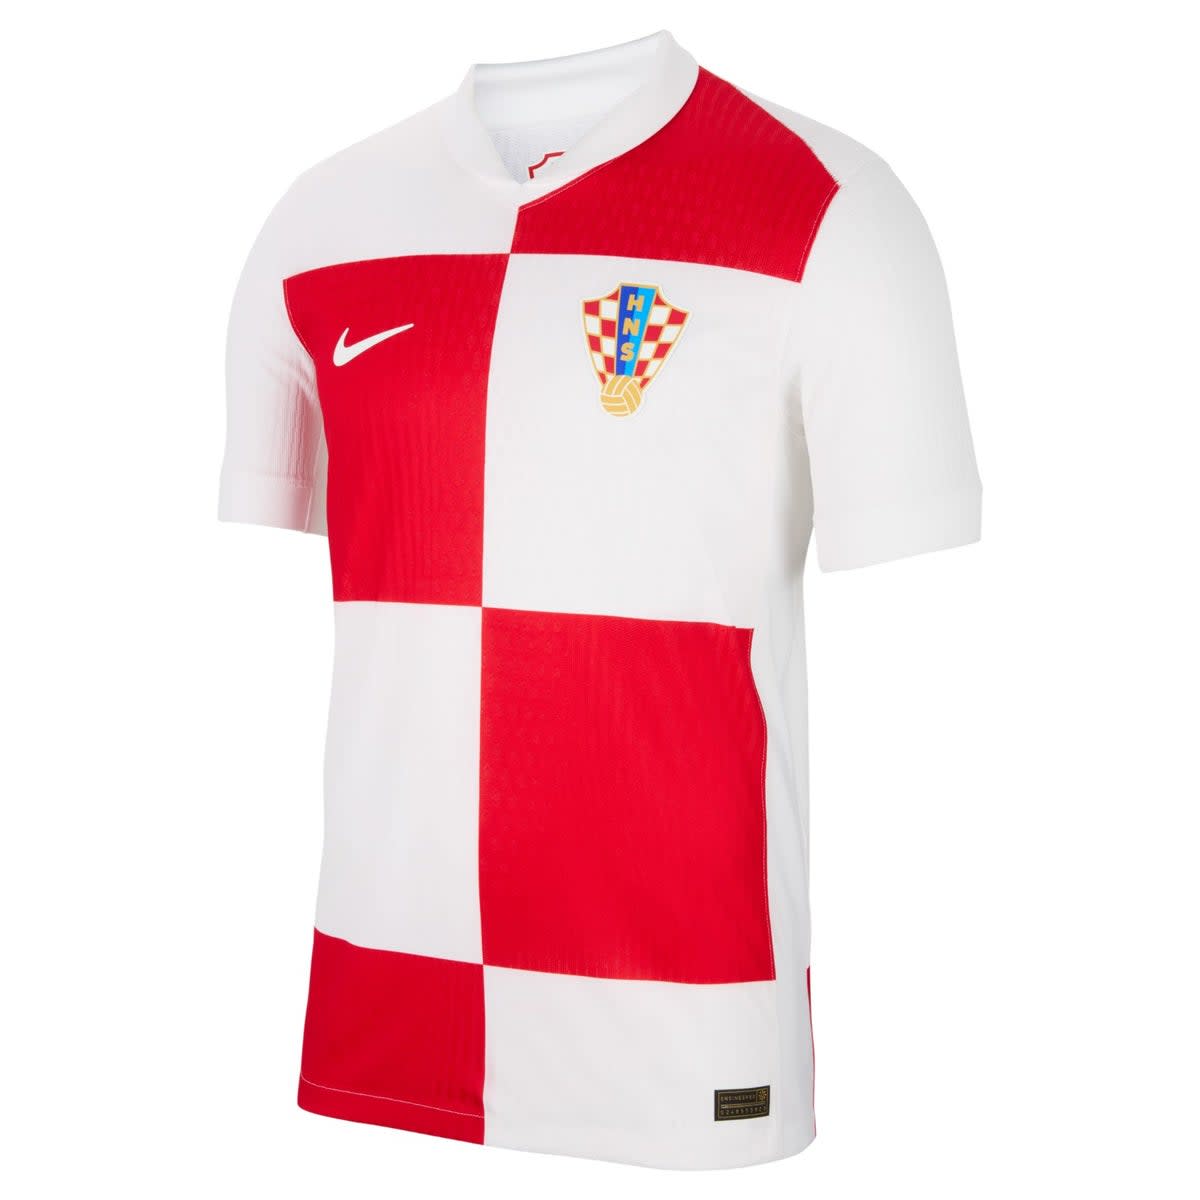 Croatia home (Nike)